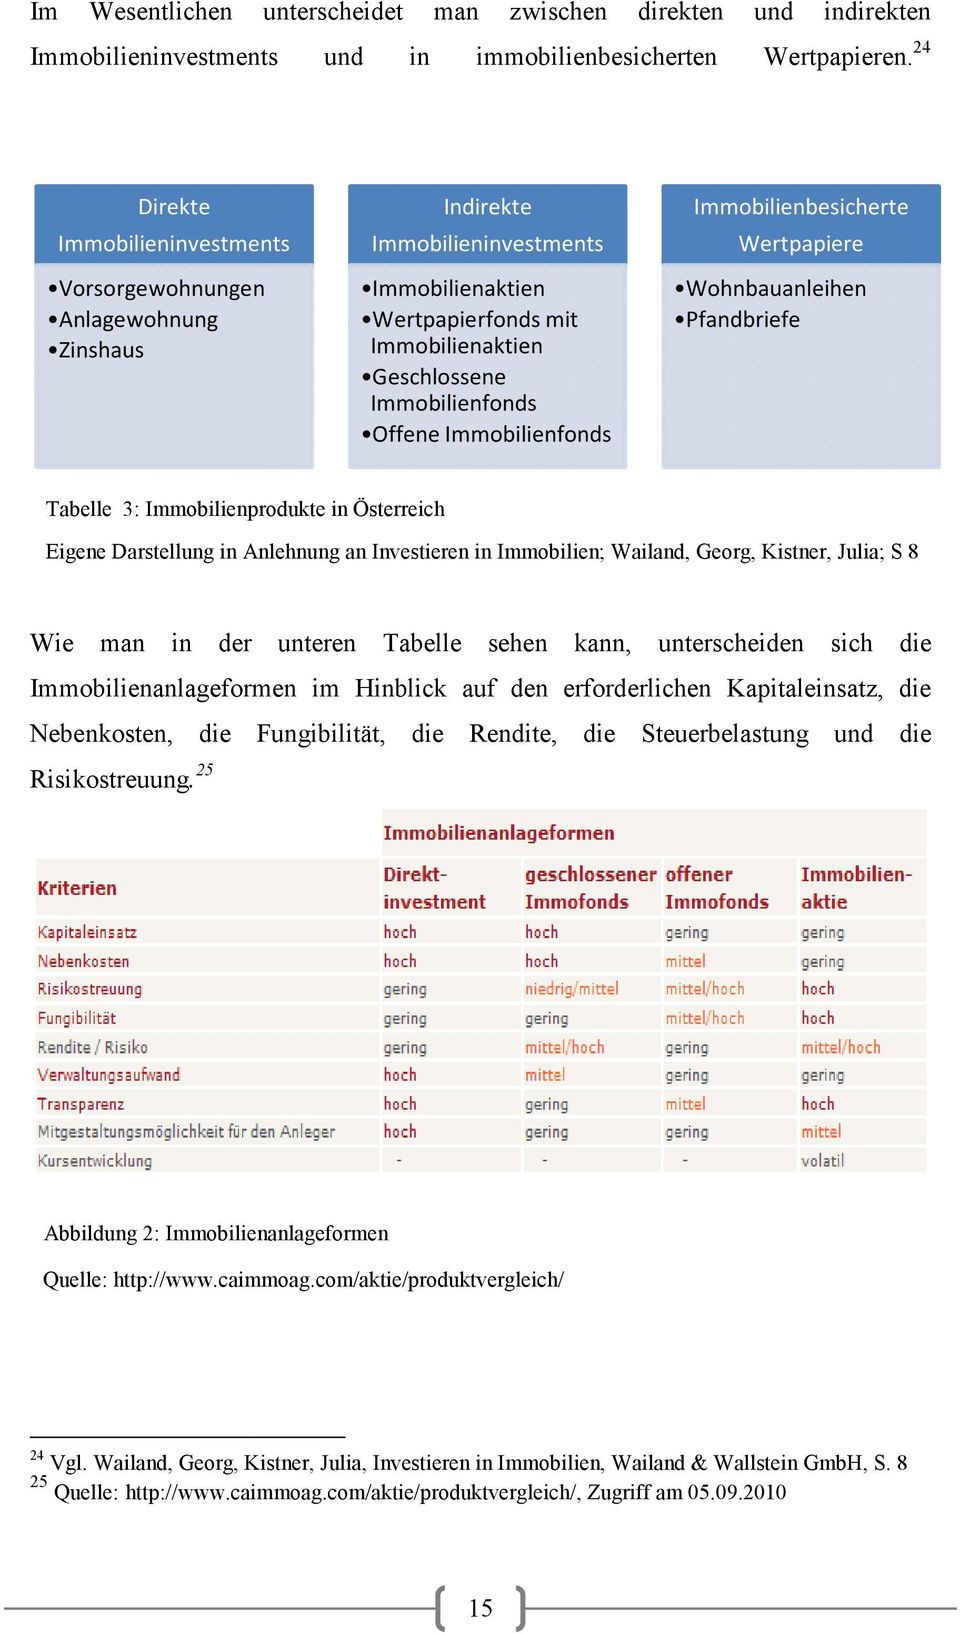 Immobilienfonds Immobilienbesicherte Wertpapiere Wohnbauanleihen Pfandbriefe Tabelle 3: Immobilienprodukte in Österreich Eigene Darstellung in Anlehnung an Investieren in Immobilien; Wailand, Georg,